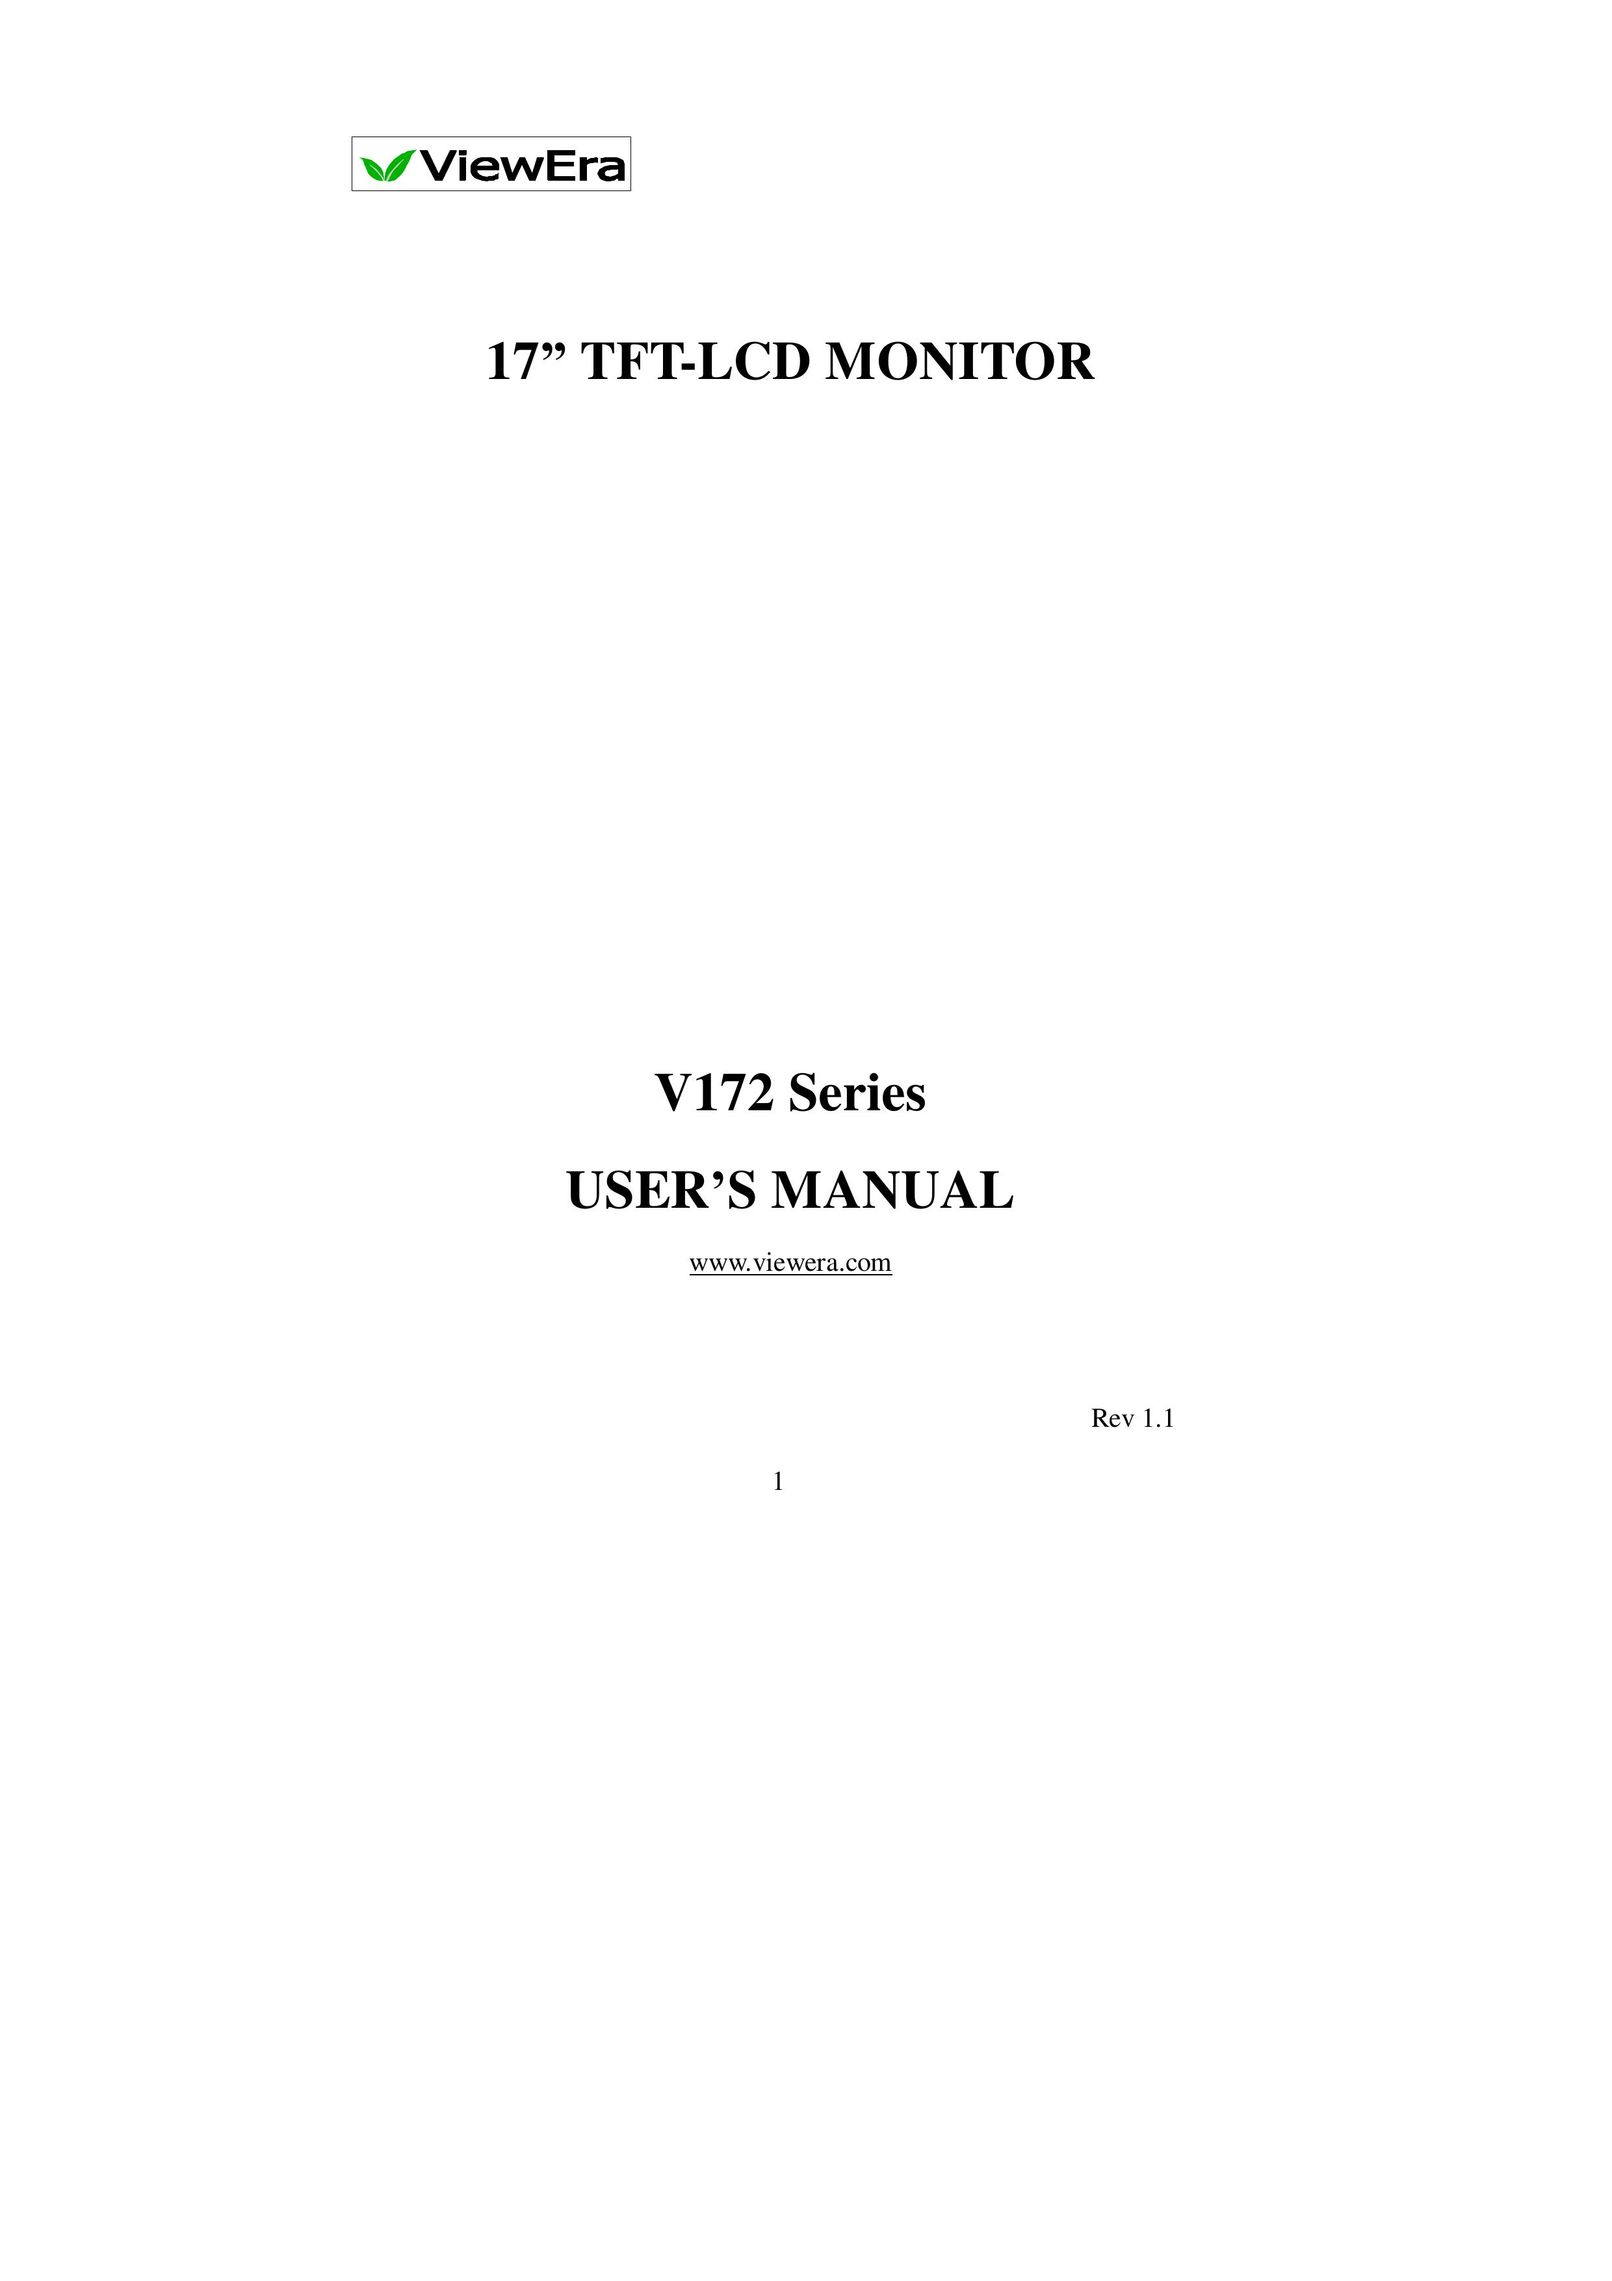 ViewEra V172 Computer Monitor User Manual